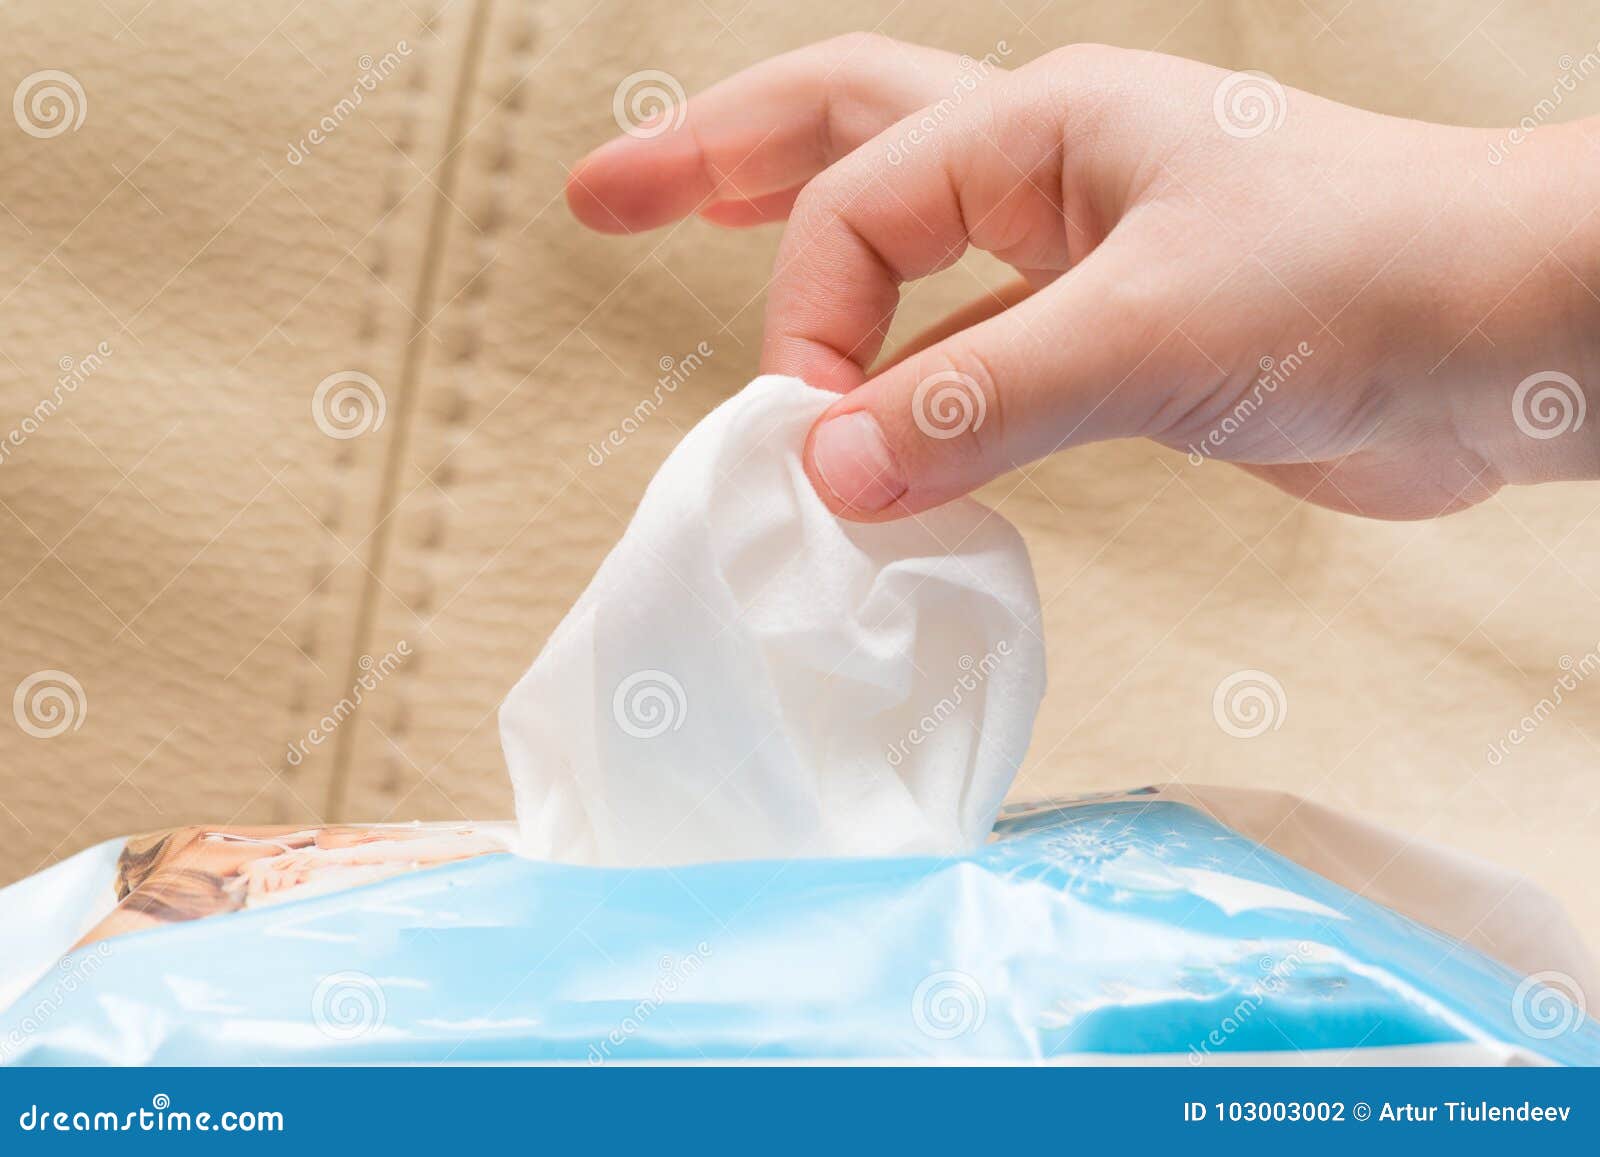 Попросила принести полотенце. Рука с салфеткой. Ребенок вытирает руки салфетками. Мокрая салфетка. Влажная салфетка (руки).